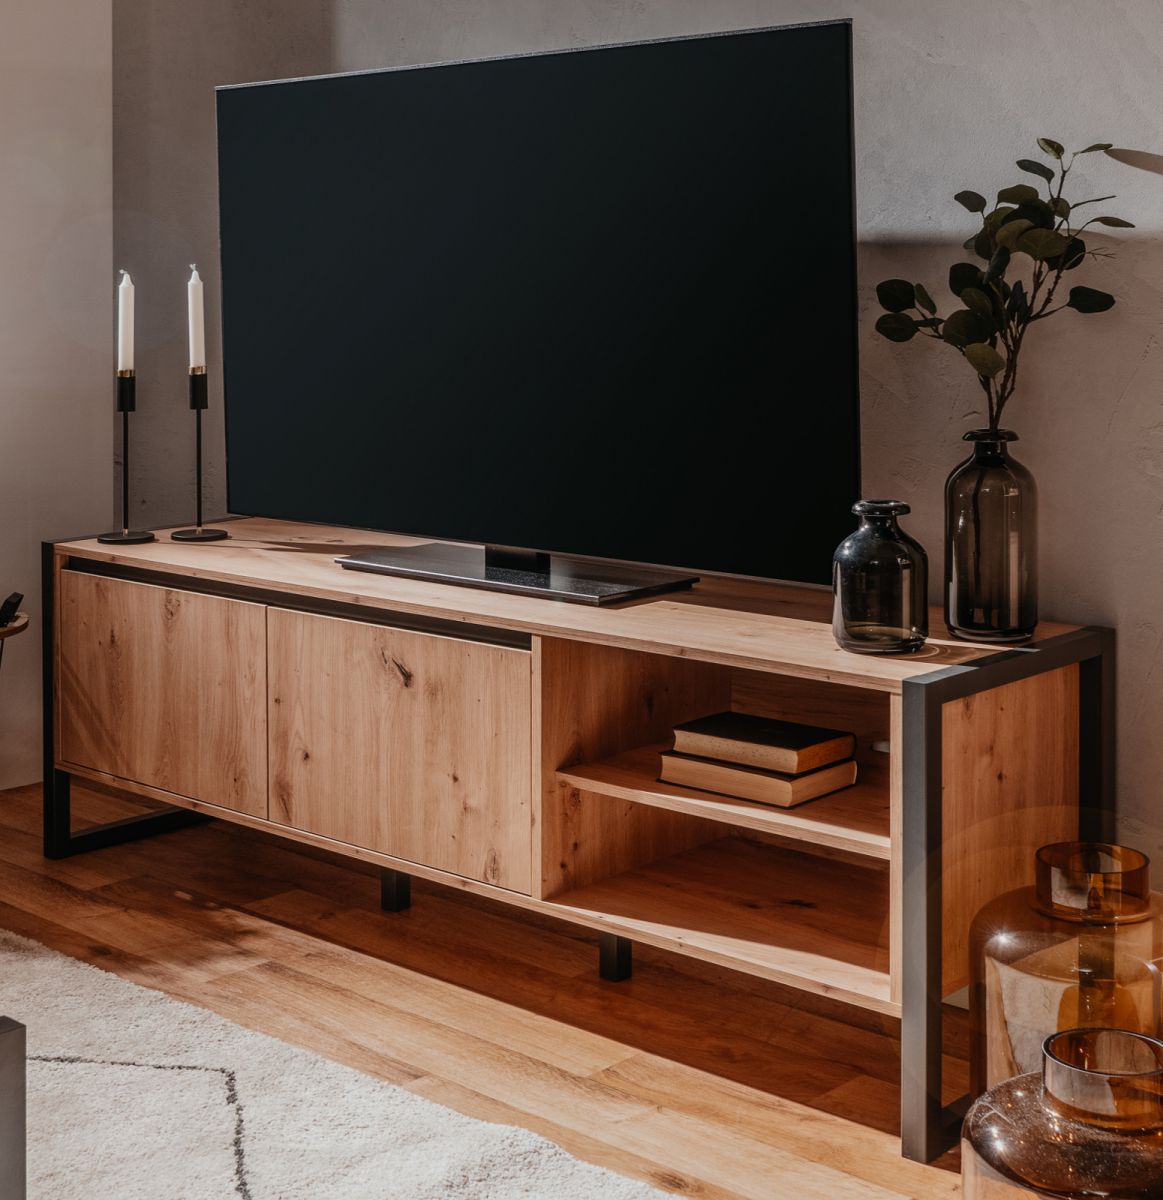 TV-Lowboard Denver in Artisan Eiche und Anthrazit im Industrial Look 160 x 55 cm unter Wohnzimmer > TV-Möbel und Medienmöbel > TV Lowboard Holz